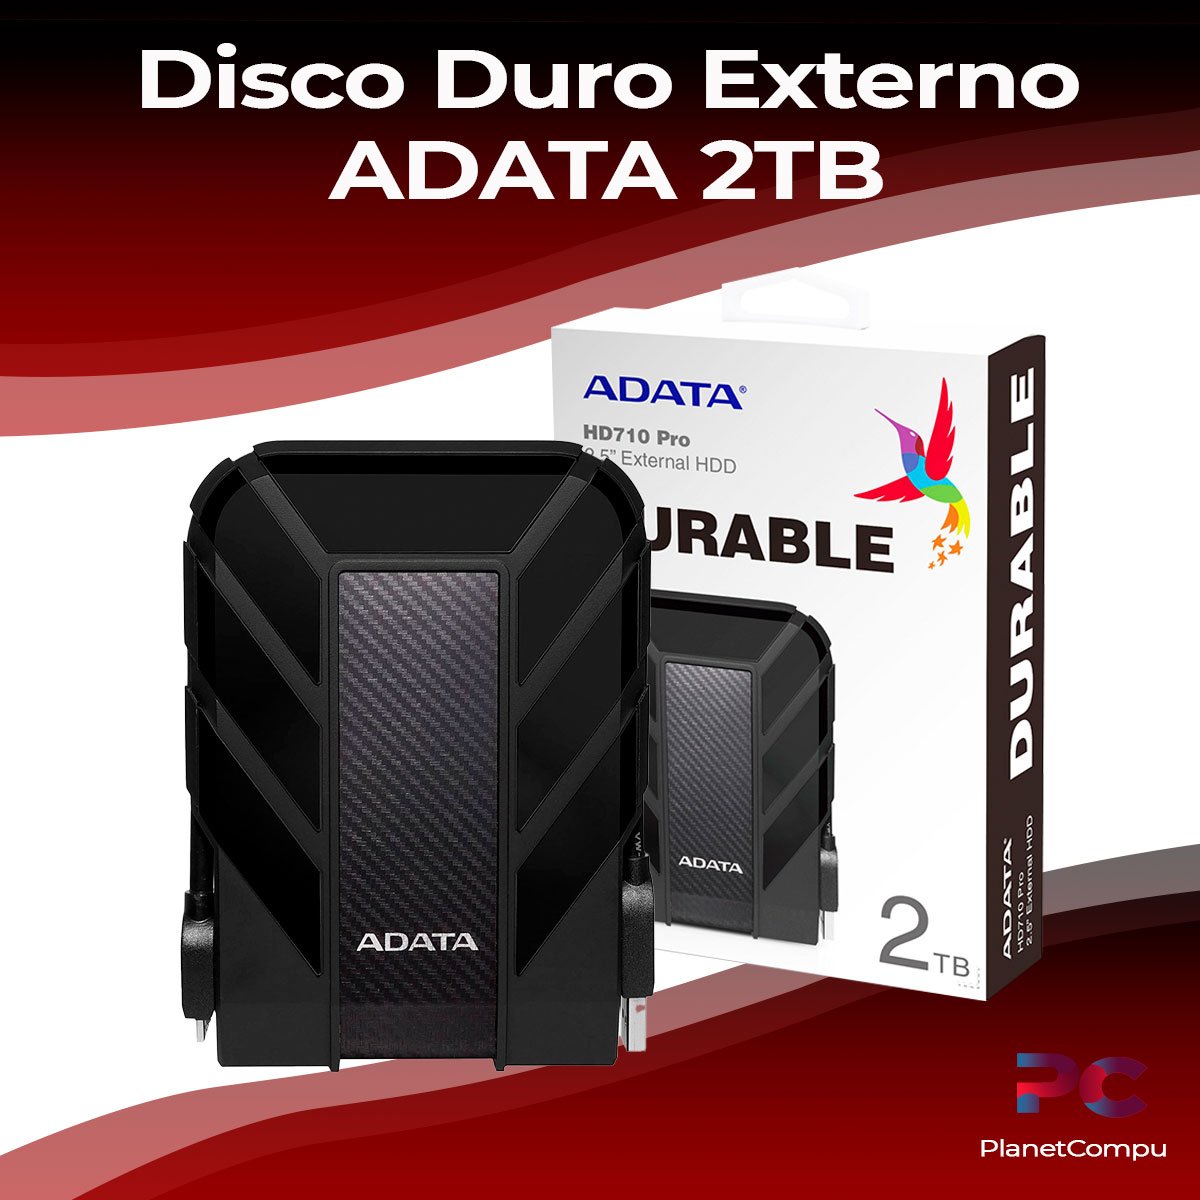 Disco Duro Externo 2tb Adata HD710 pro – PlanetCompu – de PC